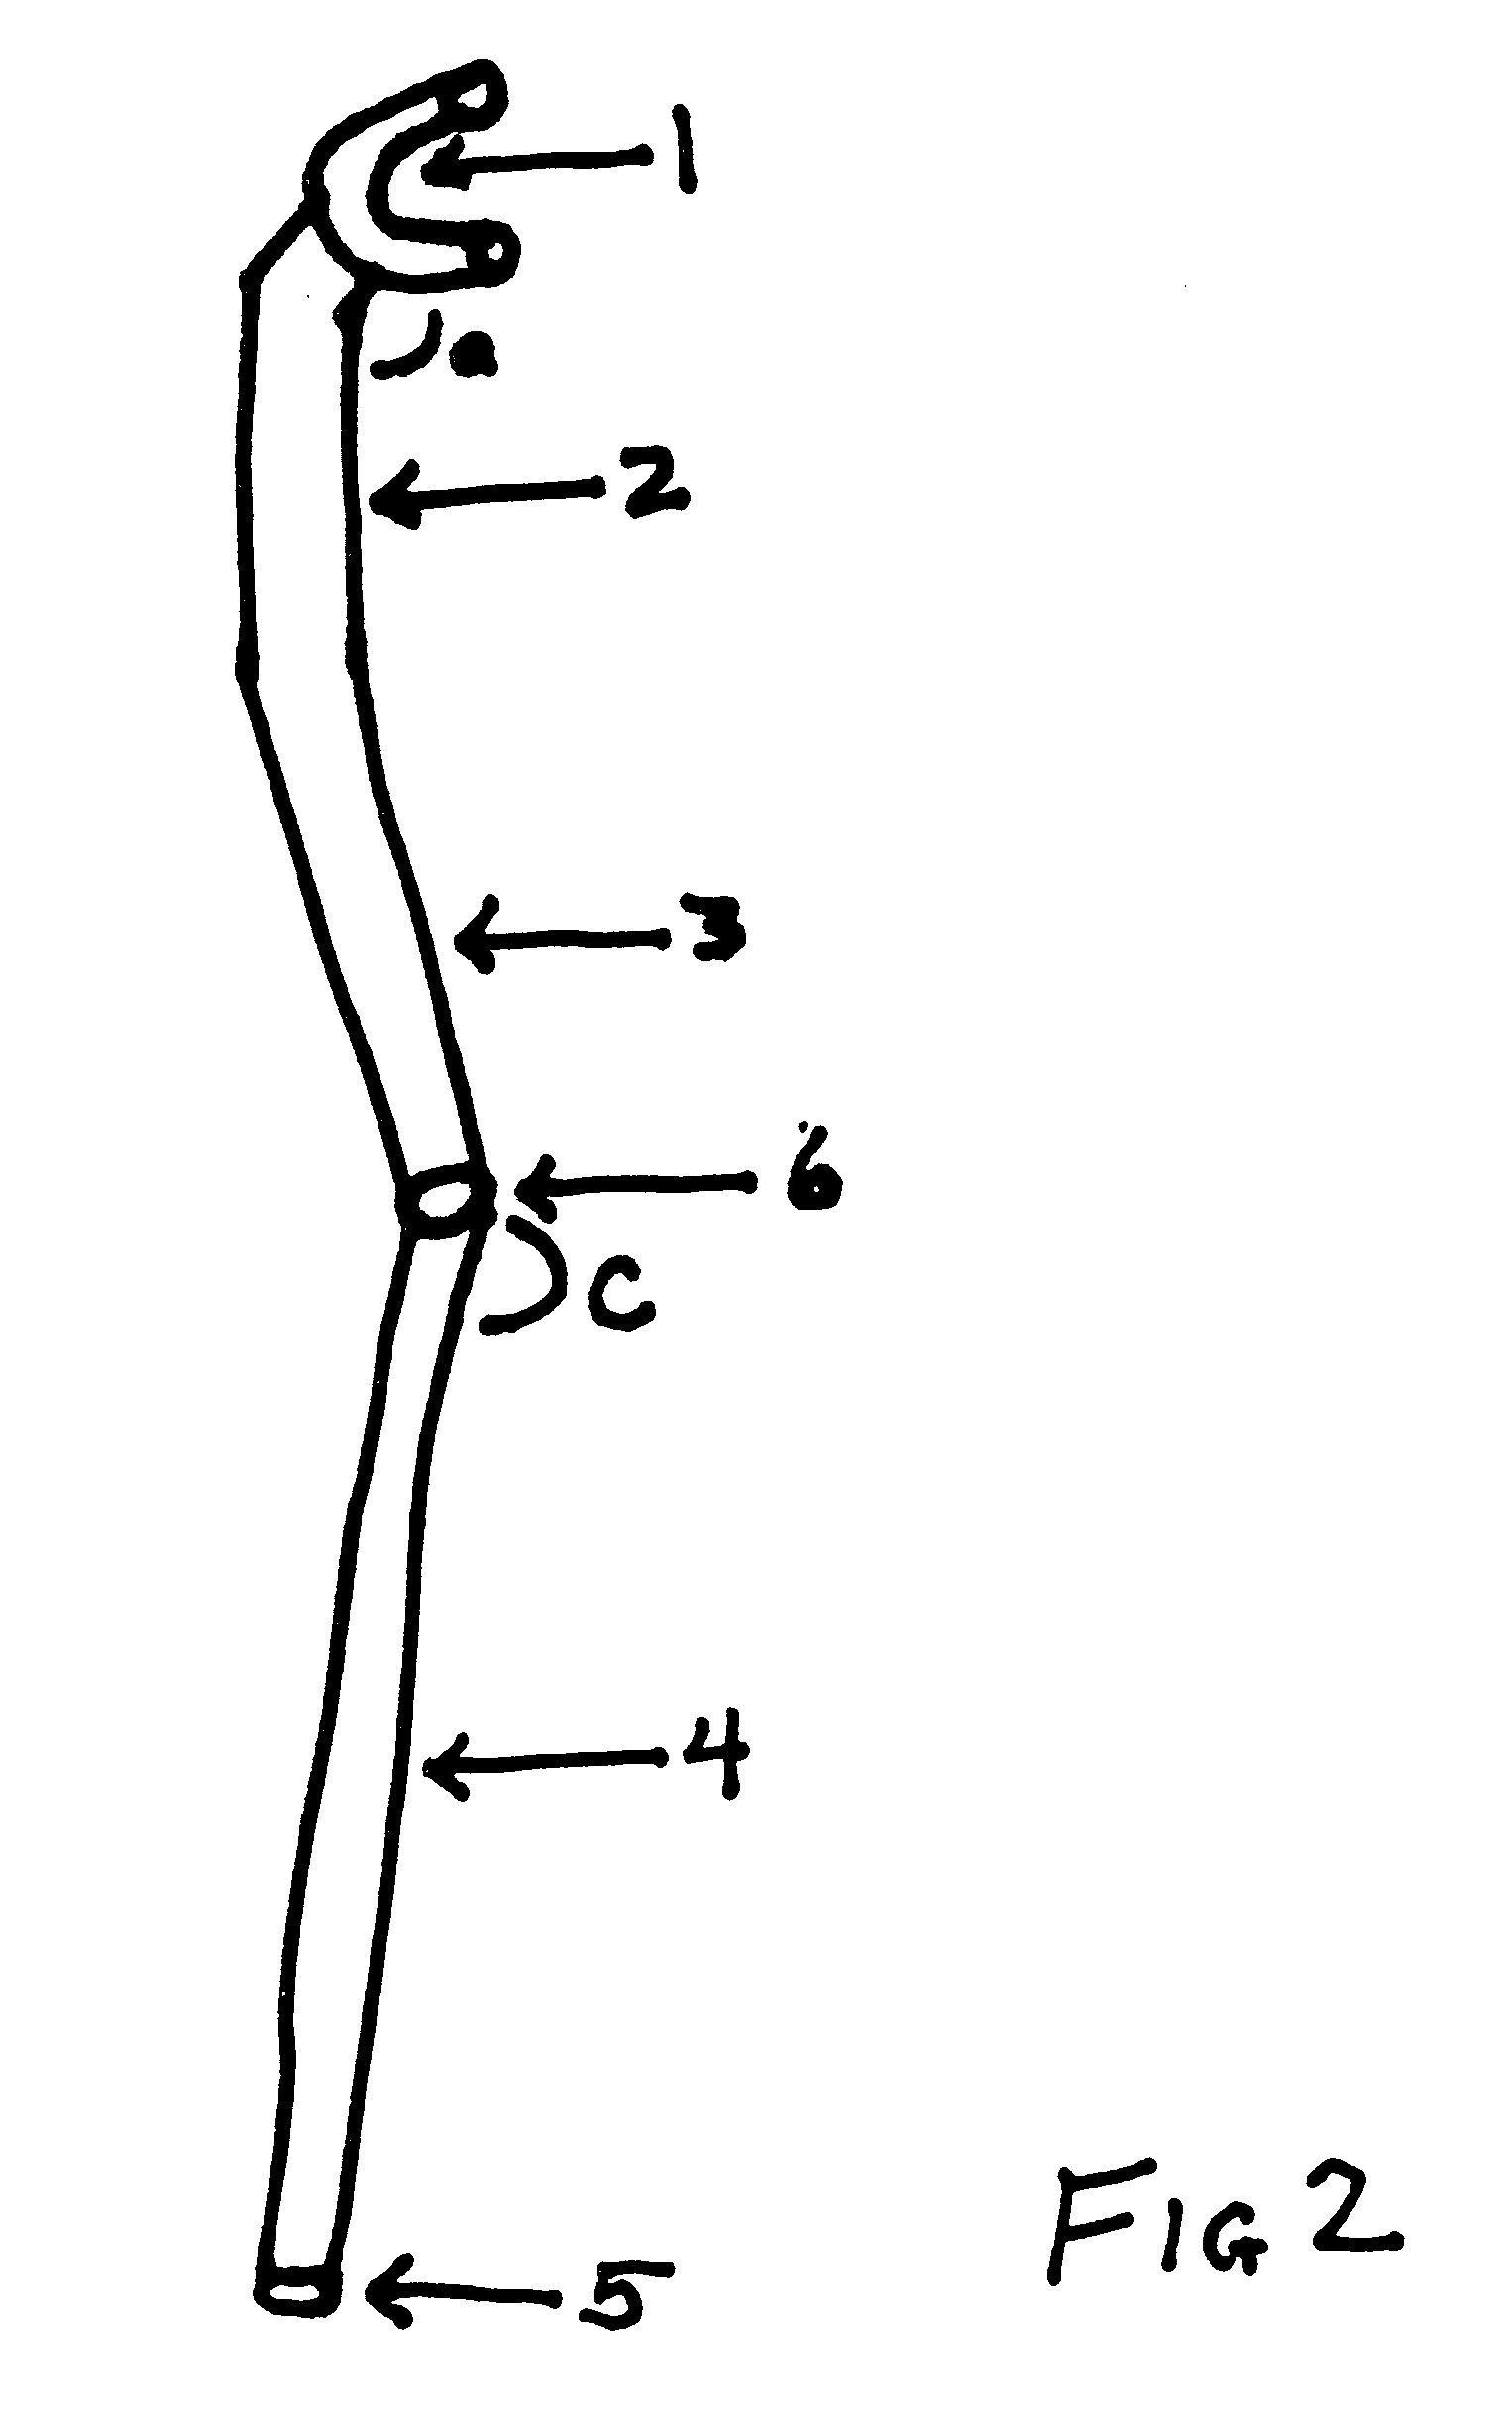 Ergonomic crutch